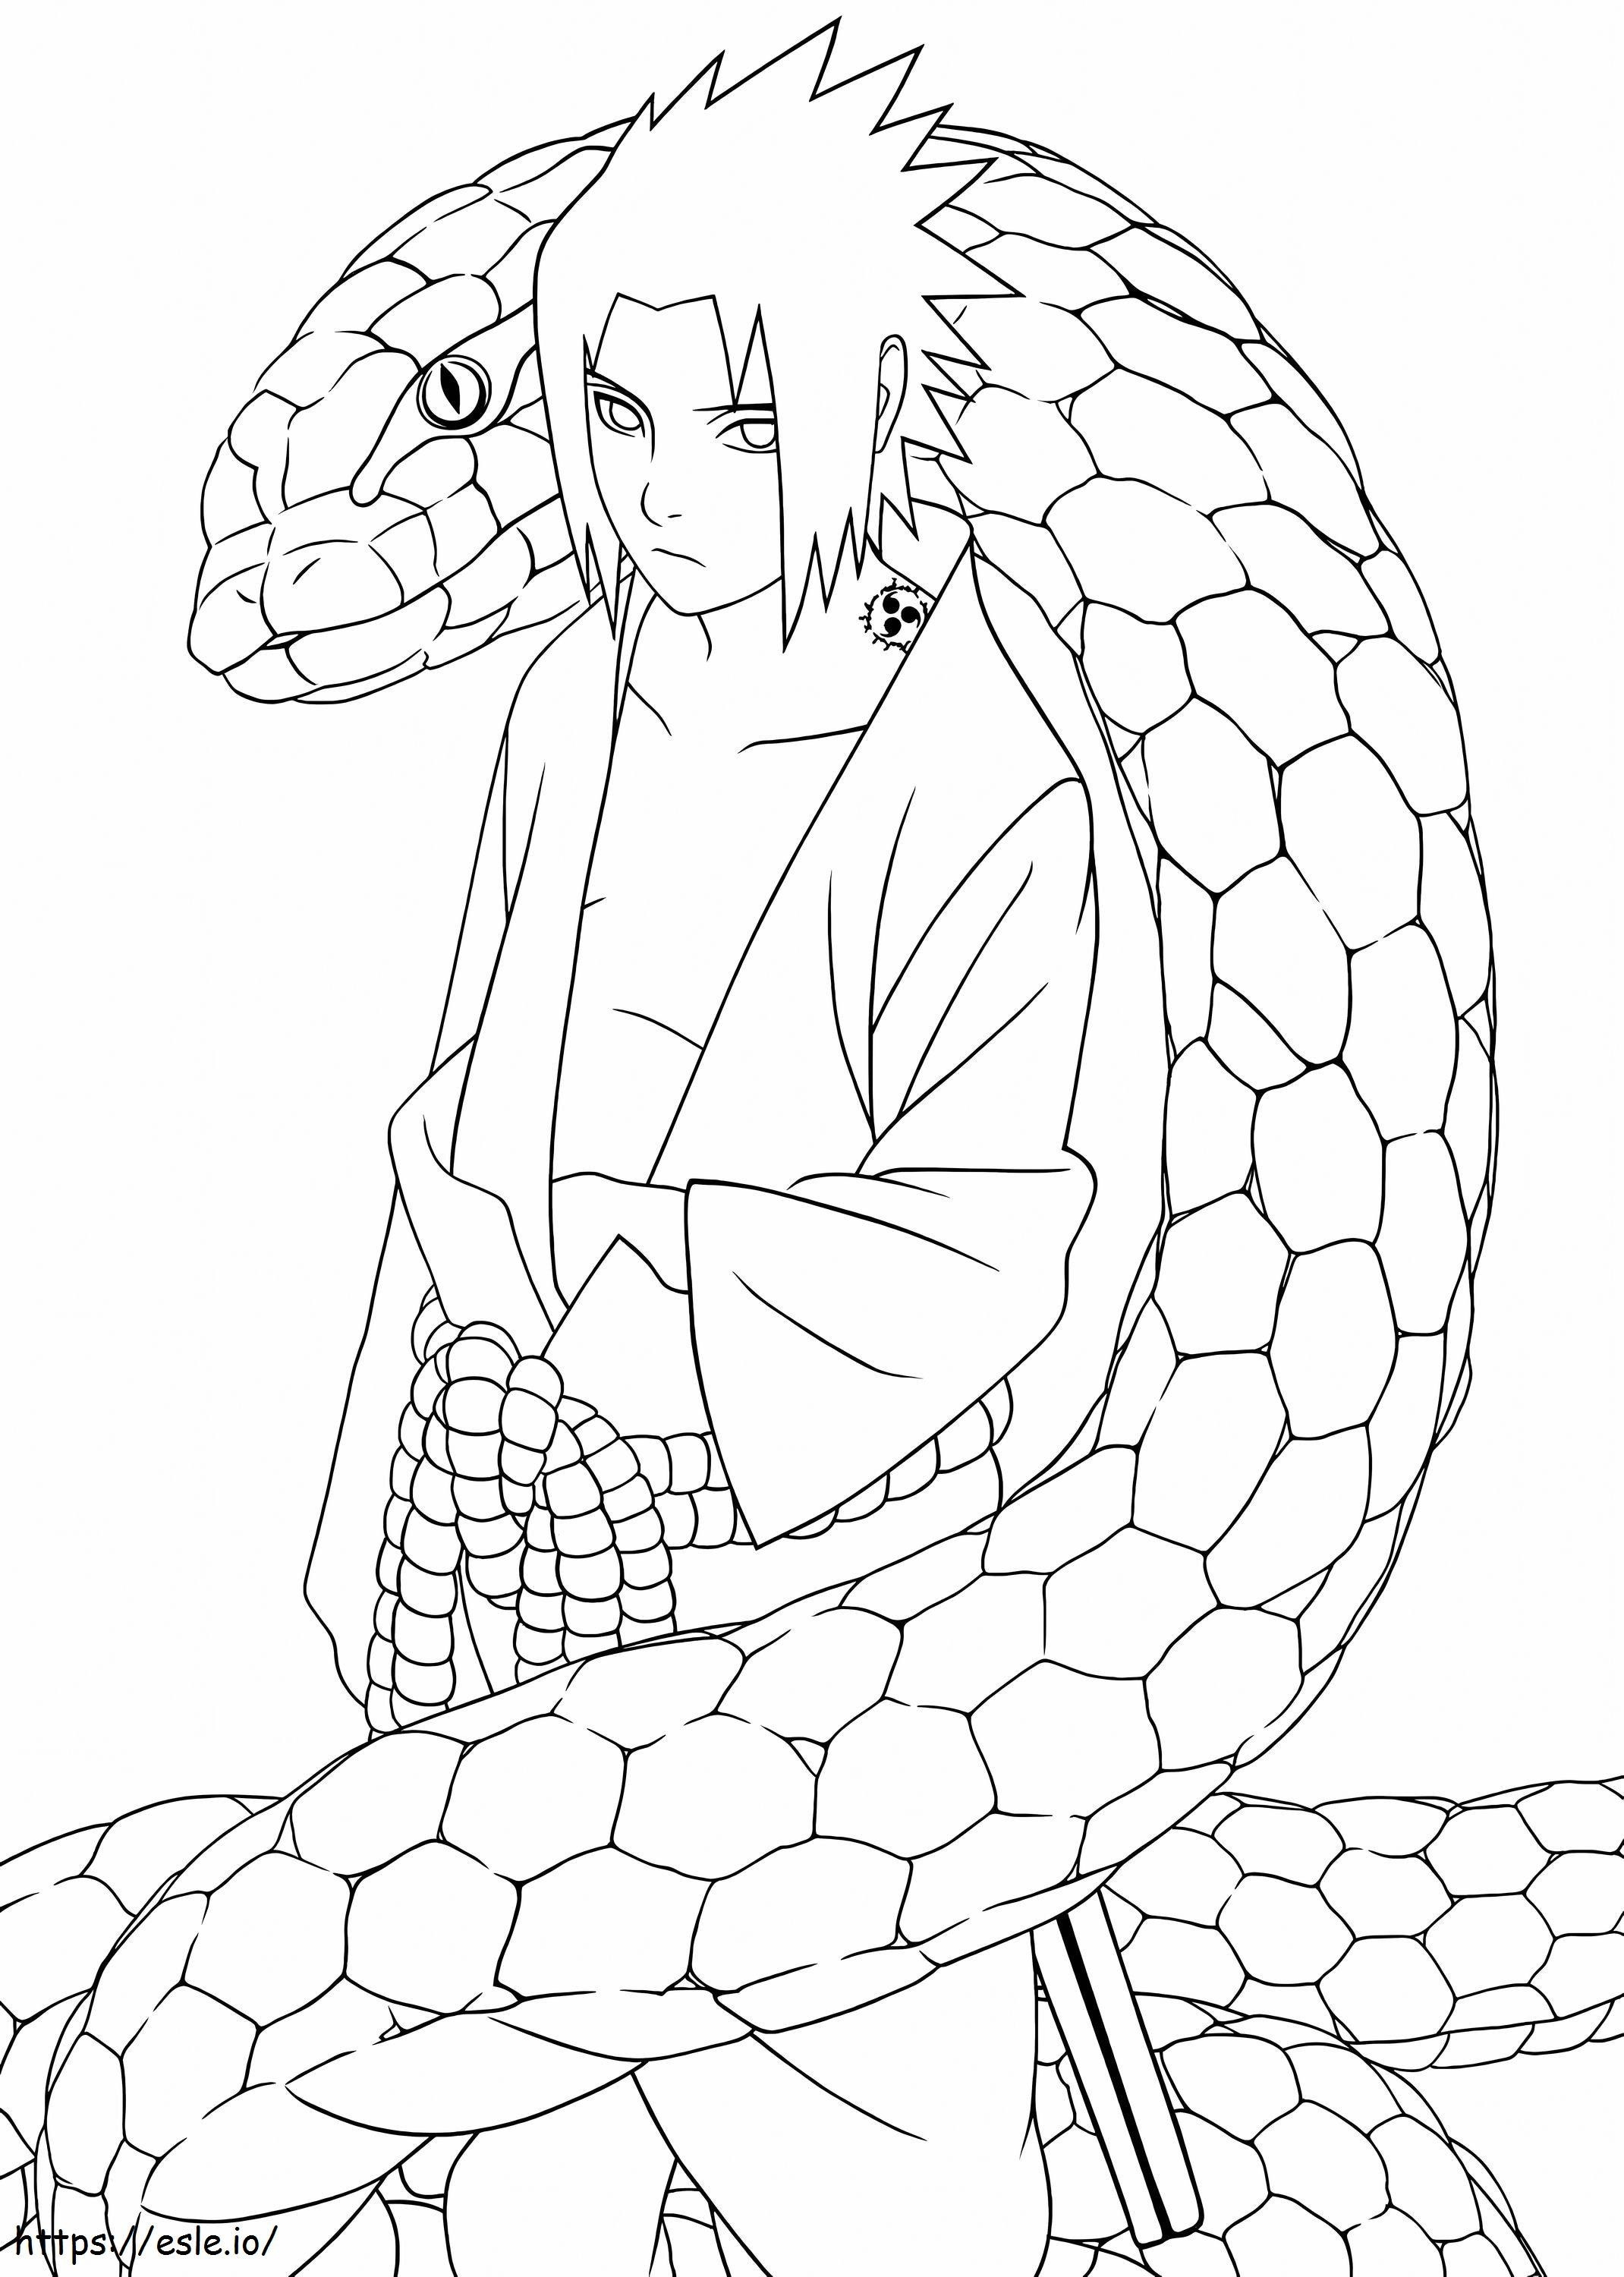 Sasuke And Snake coloring page